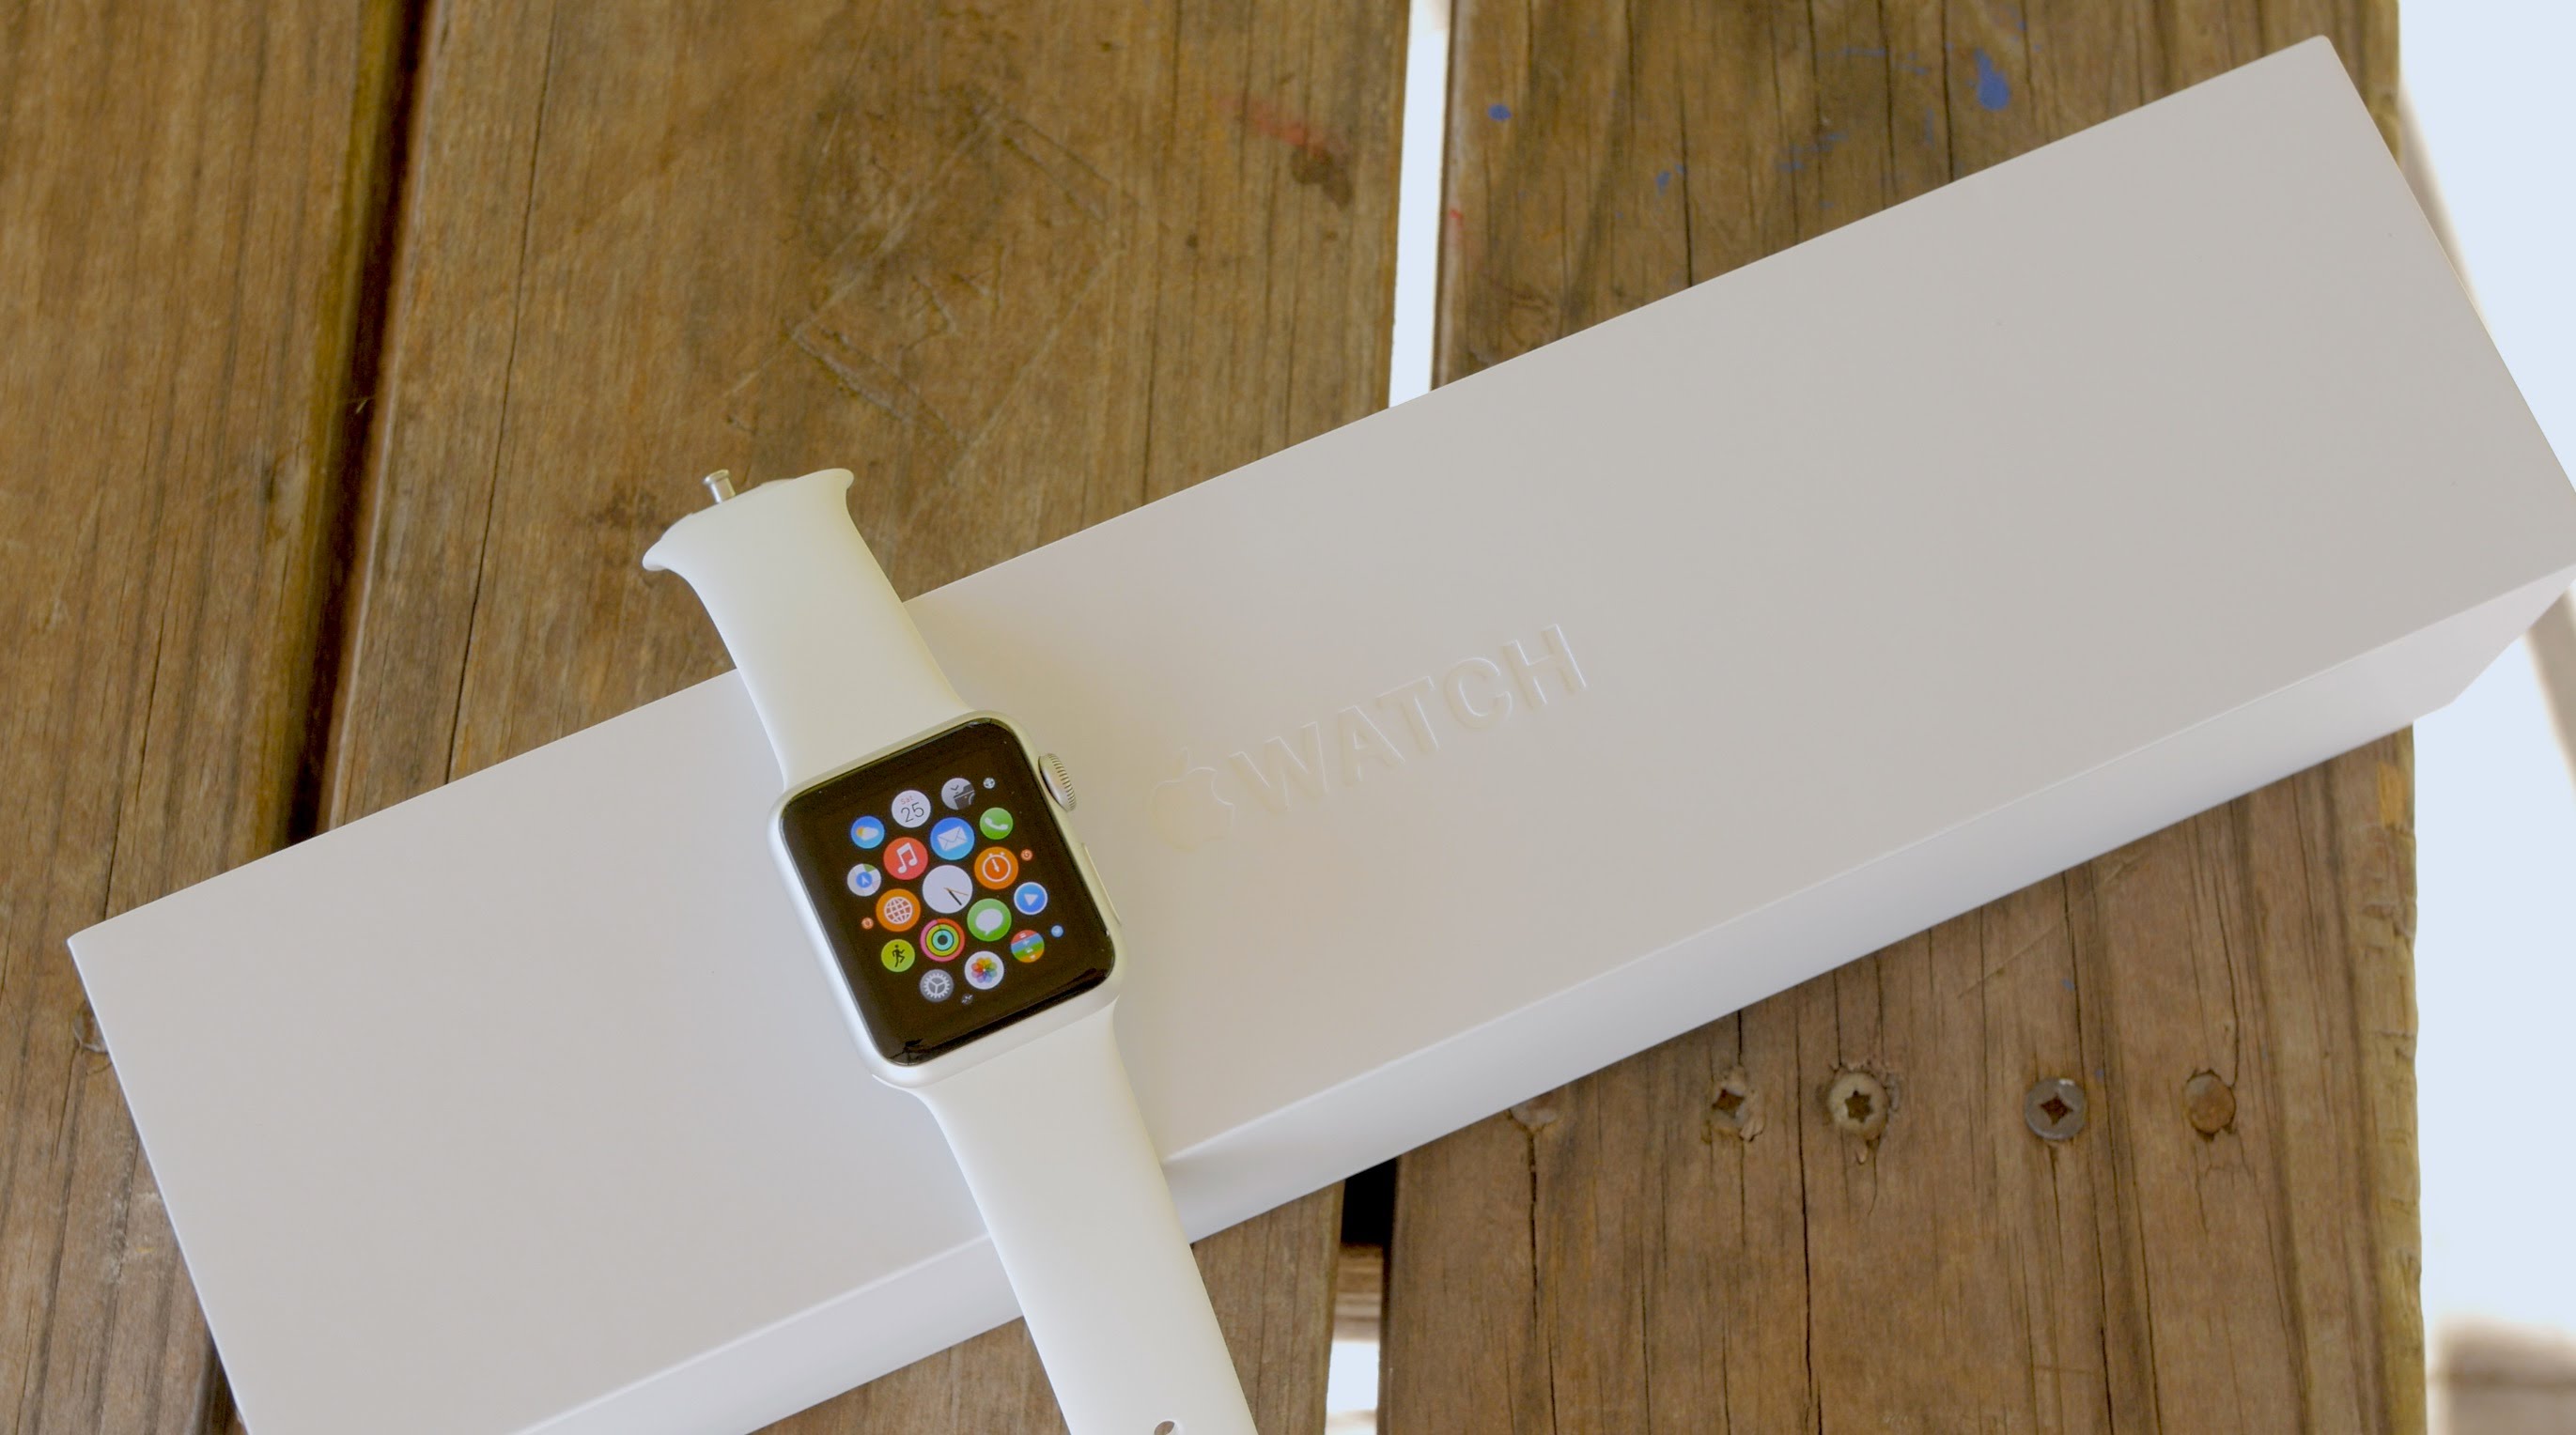 Apple watch 9 оригинал. Эппл вотч 6 коробка. Эппл вотч 8 коробка. Эппл вотч 5 коробка. Упаковка Эппл вотч 7.